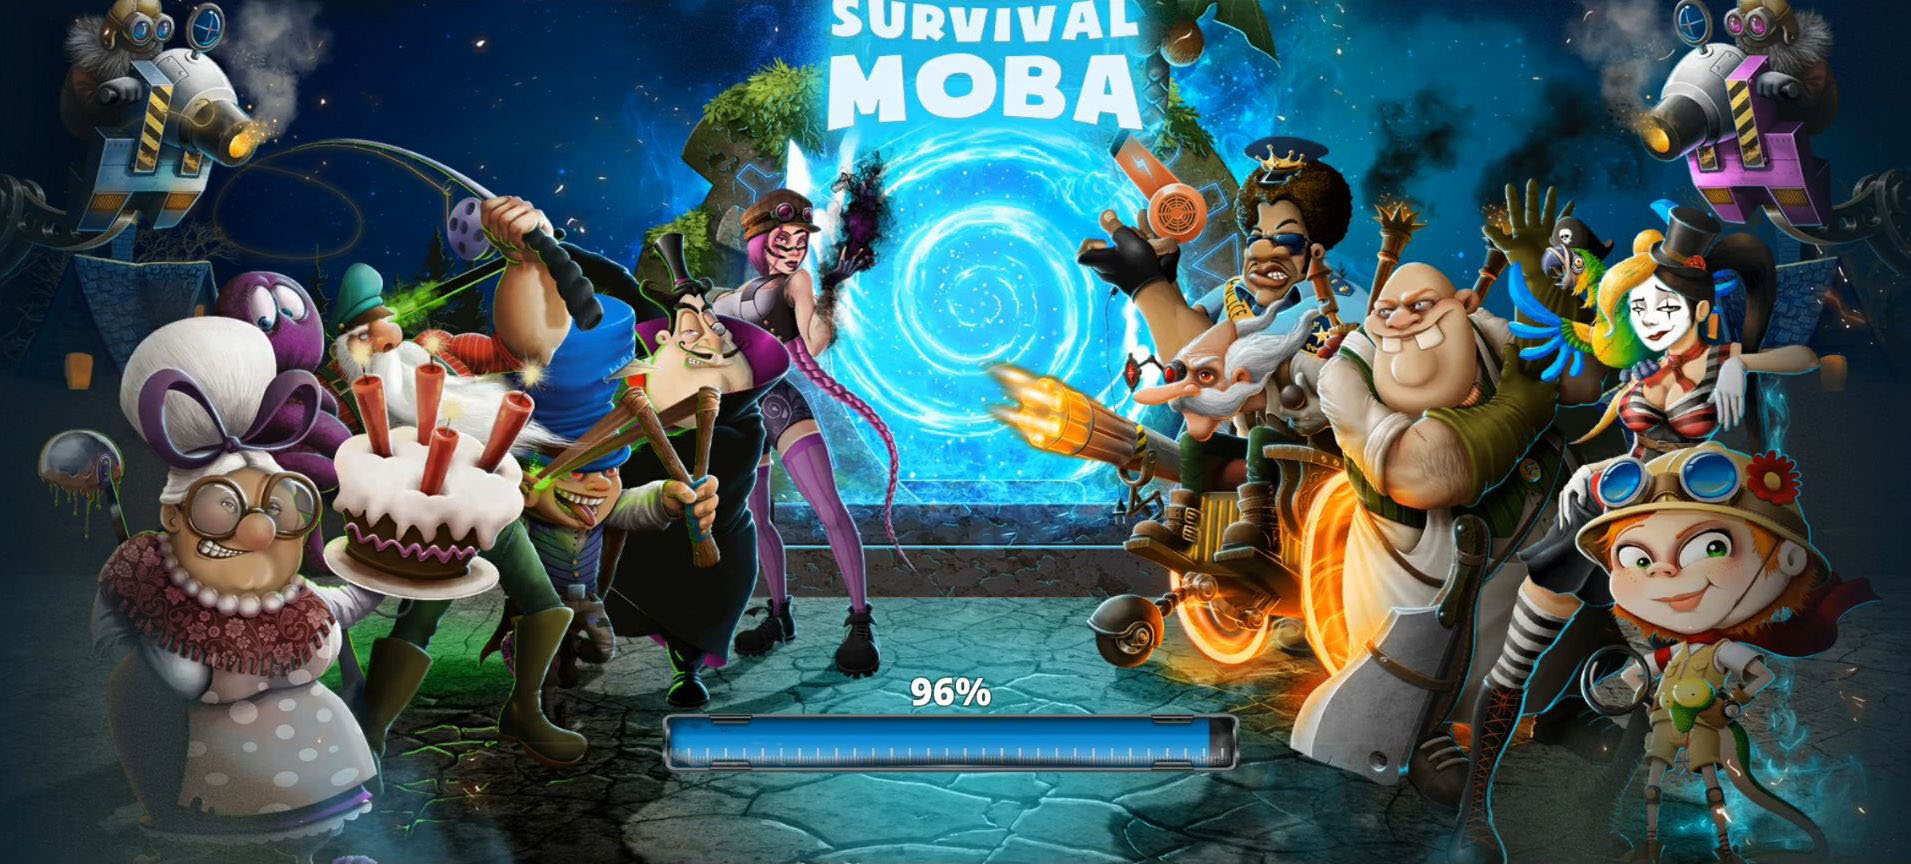 Descargar Survival MOBA gratis para Android.